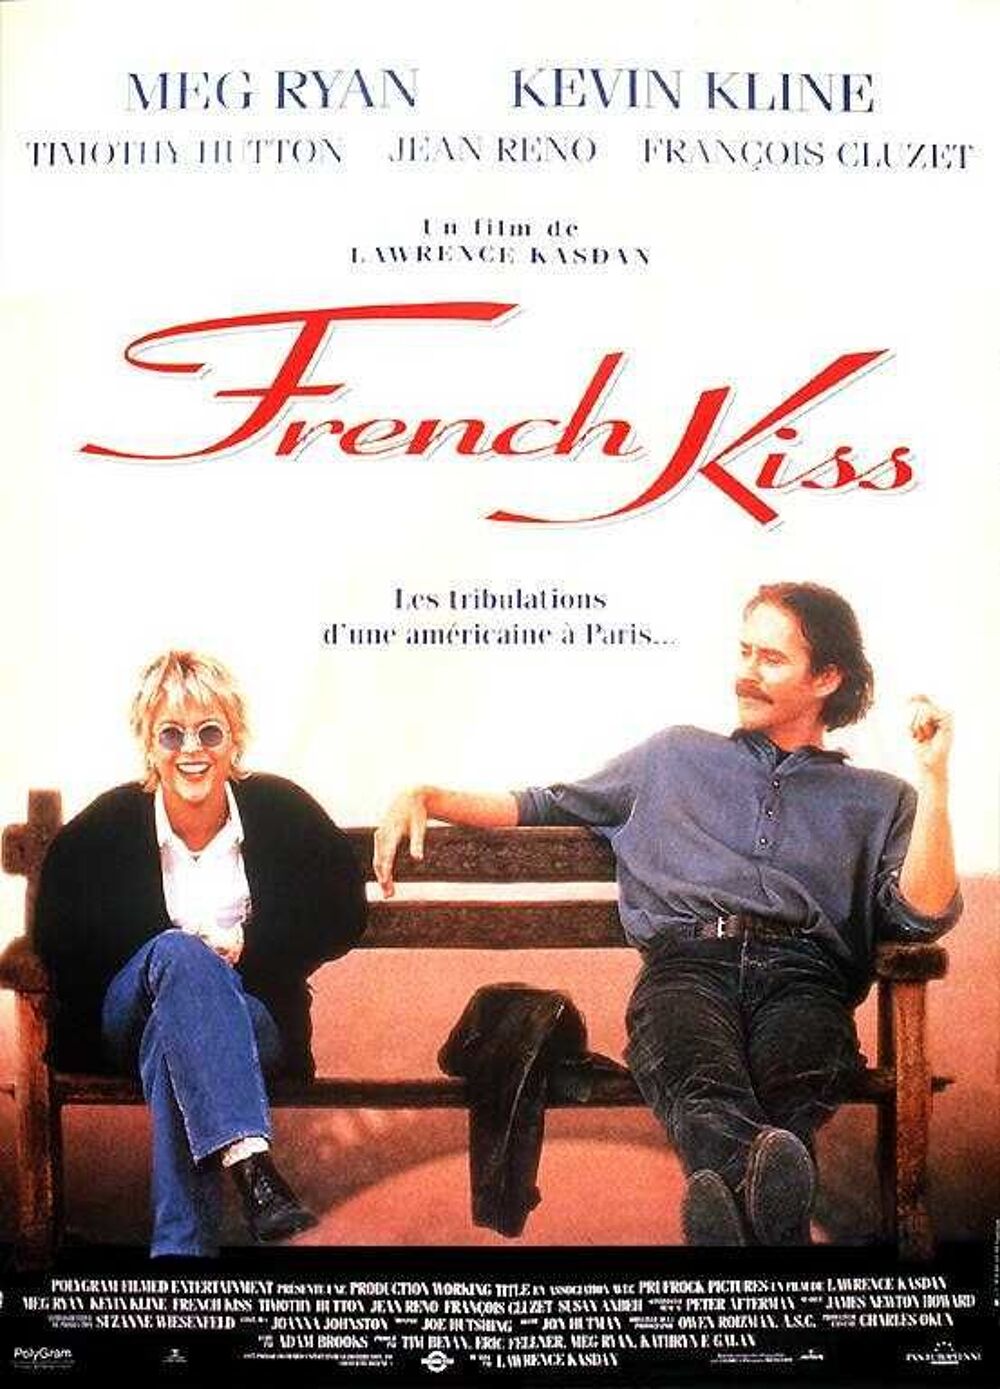  K7 Vhs: french Kiss (04) DVD et blu-ray